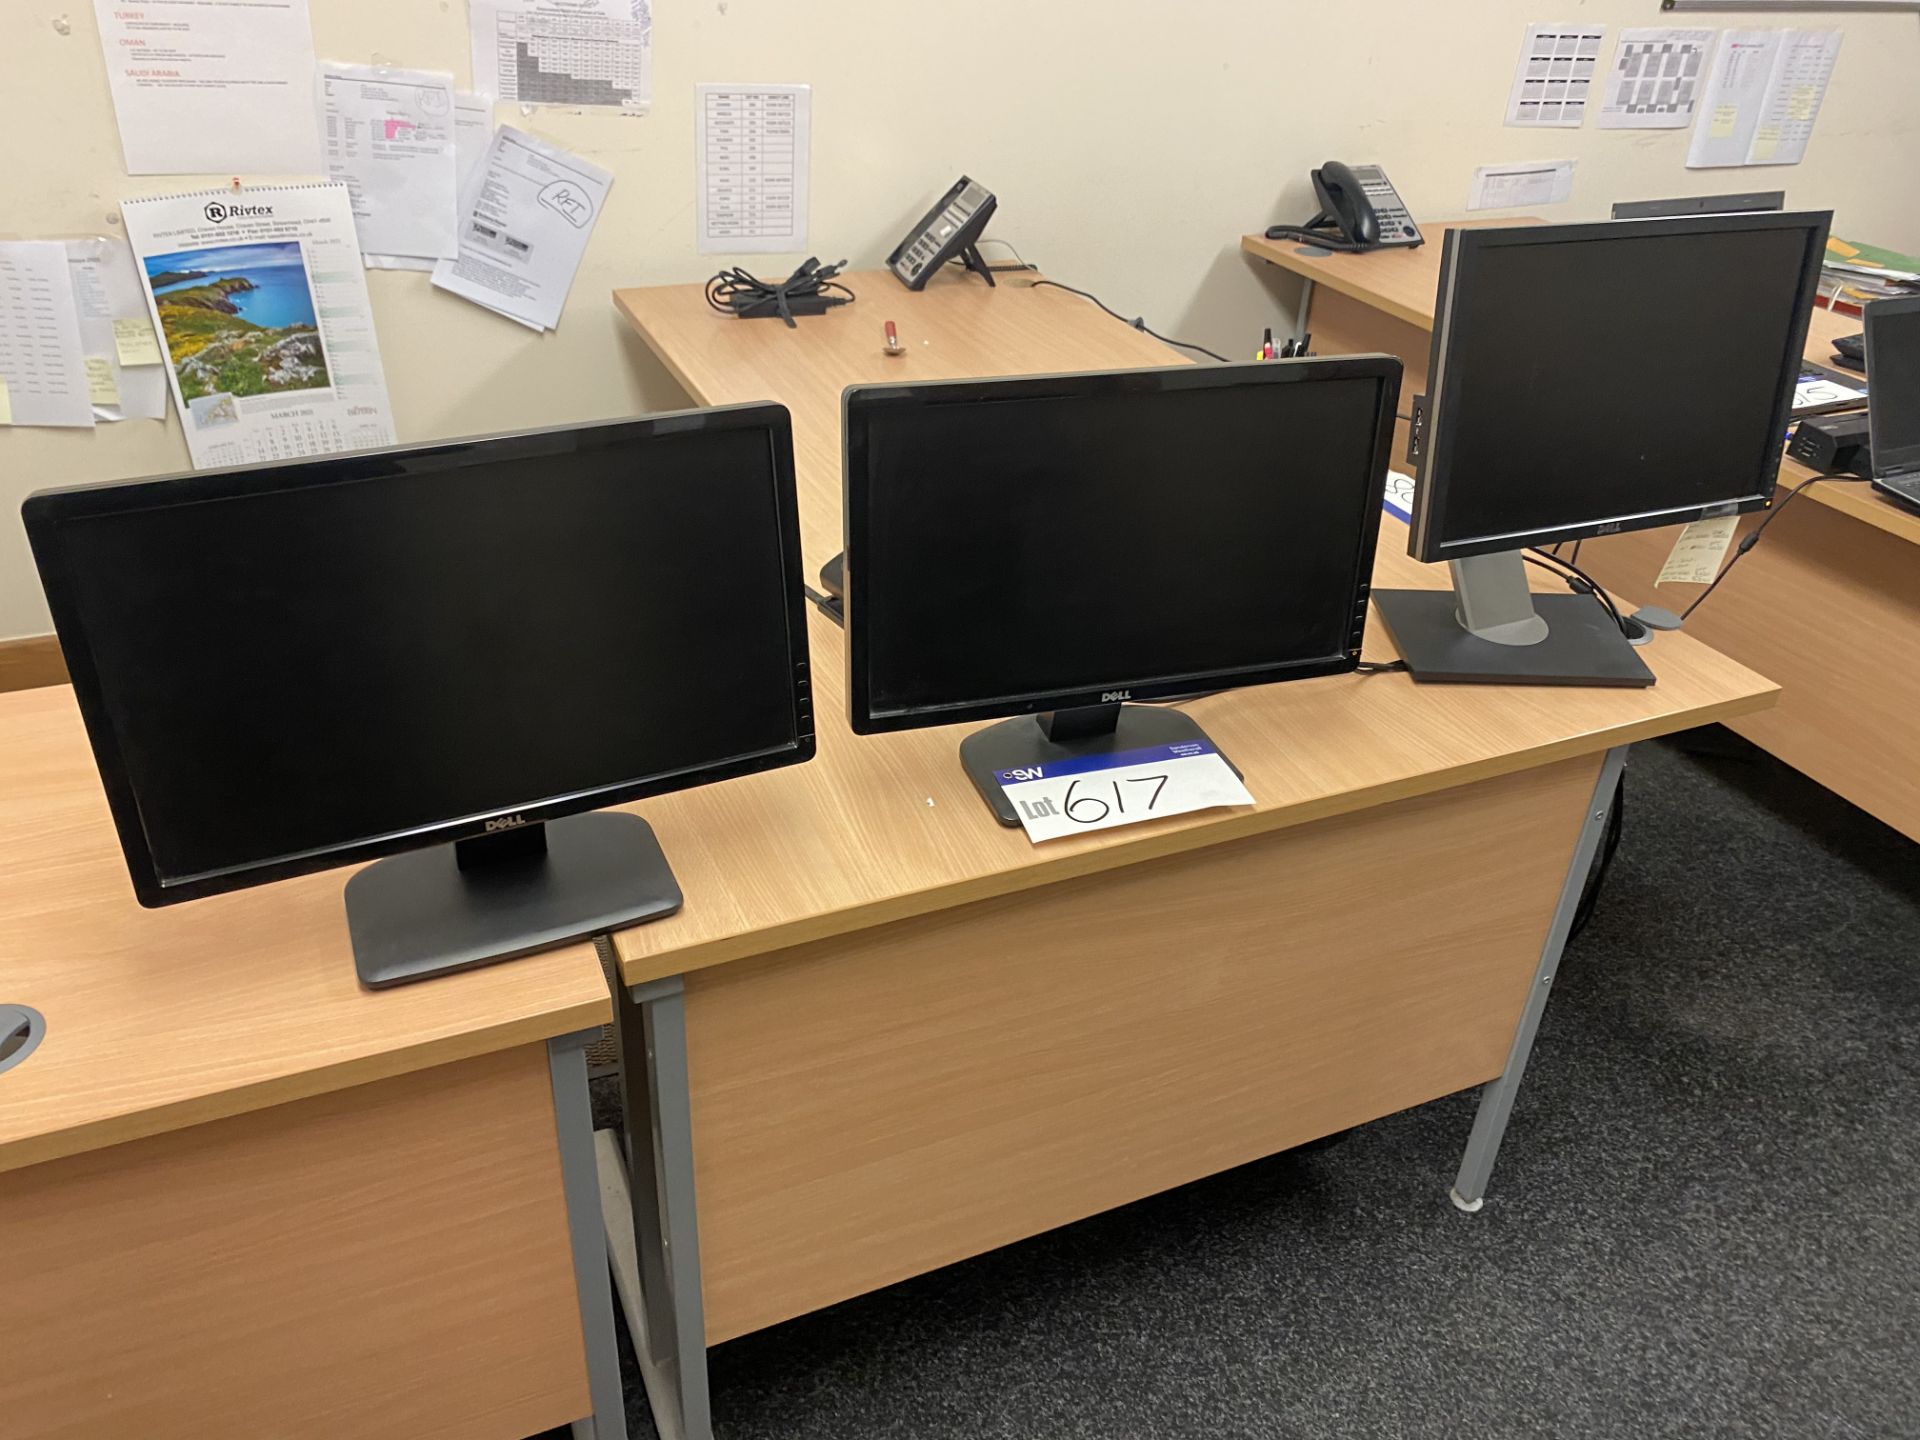 Three Dell Flat Screen Monitors